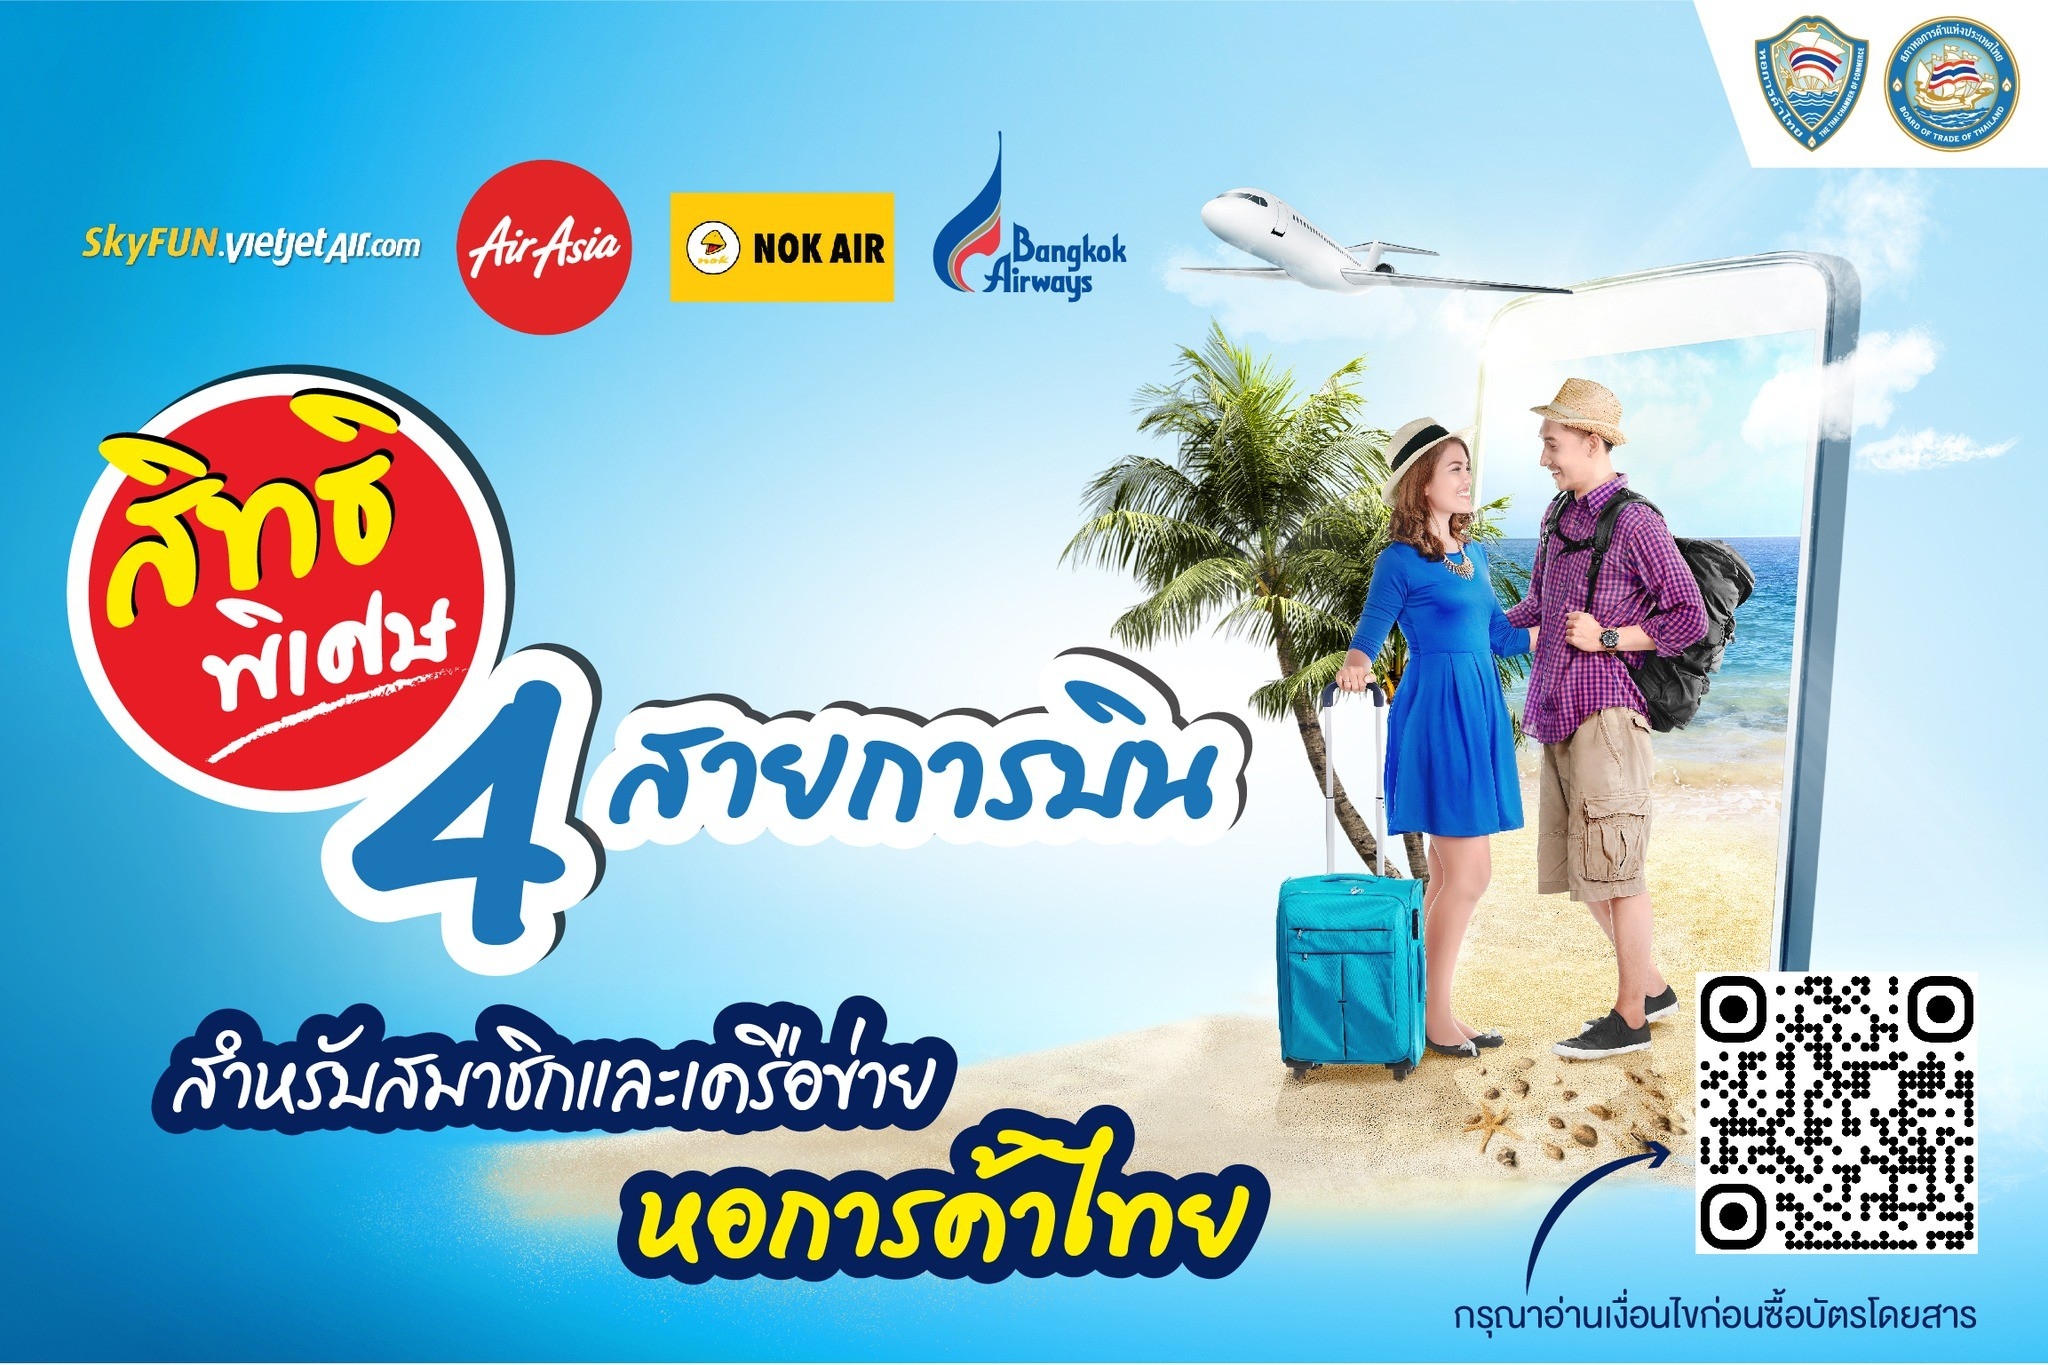 จองเลย 4 สายการบิน พันธมิตรหอการค้าไทย มีสายการบินไหนบ้าง ไปดูกัน